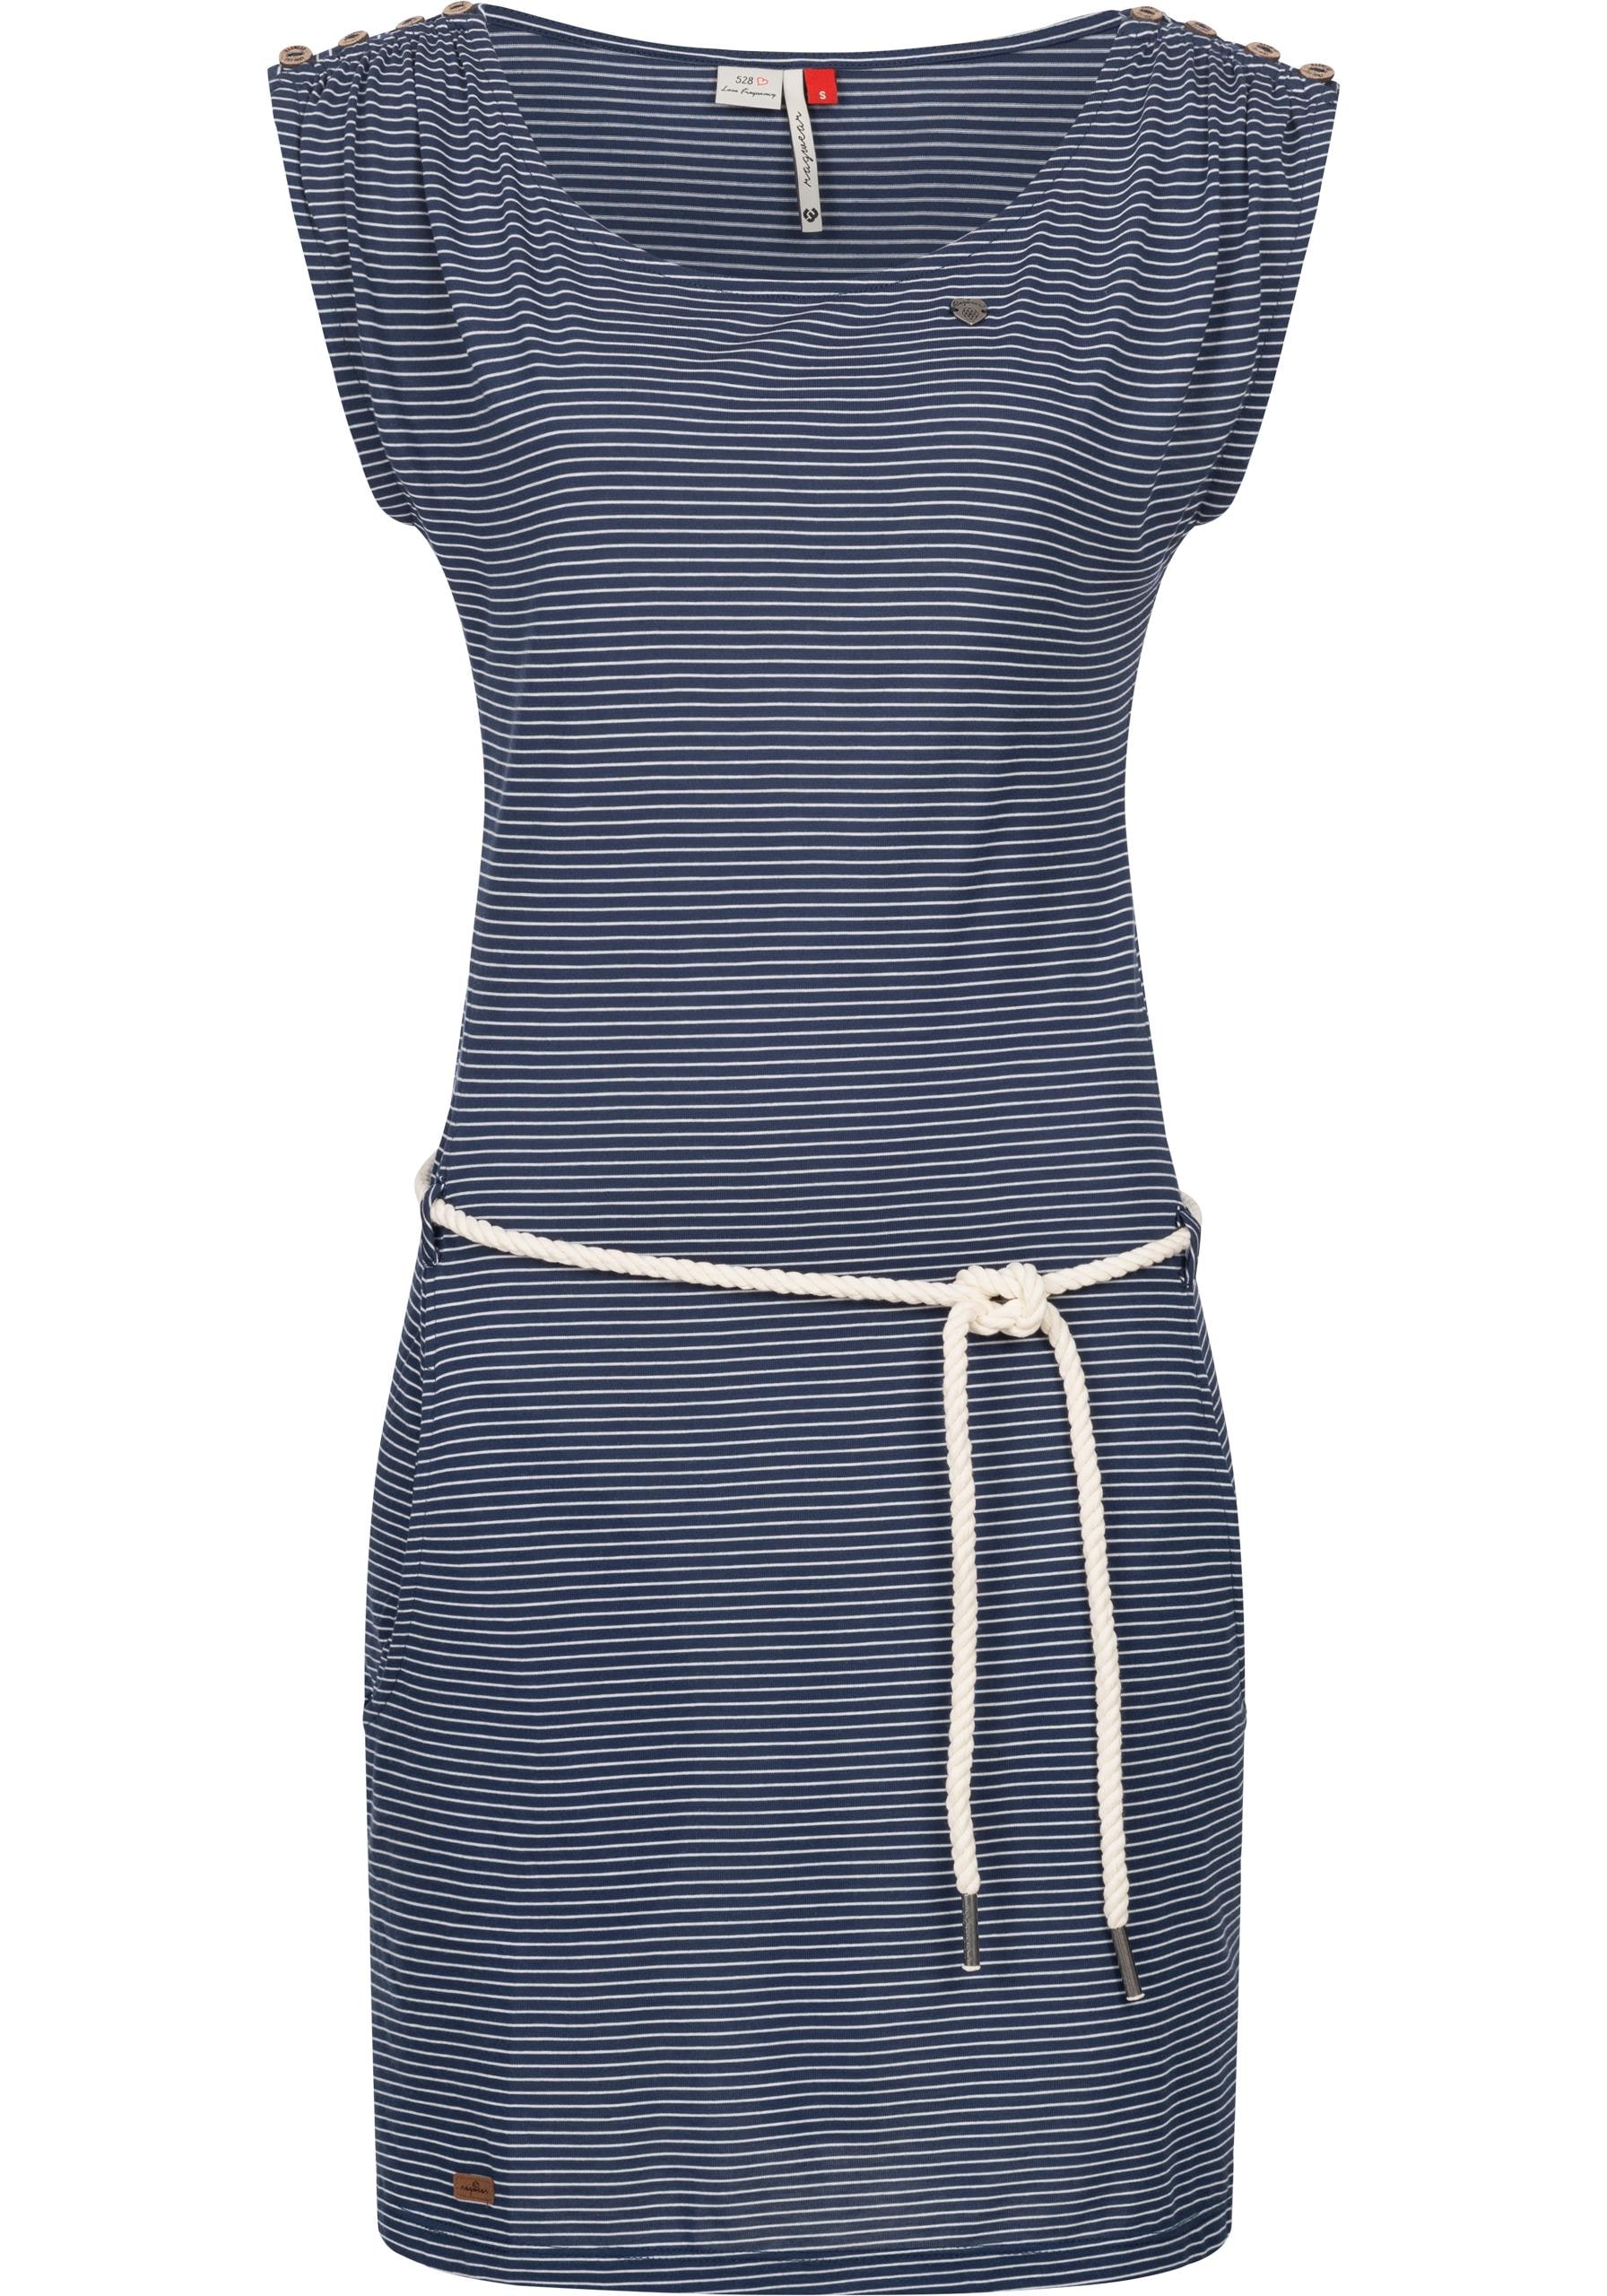 Ragwear Shirtkleid »Chego Stripes Intl.«, stylisches Sommerkleid mit  Streifen-Muster shoppen | I\'m walking